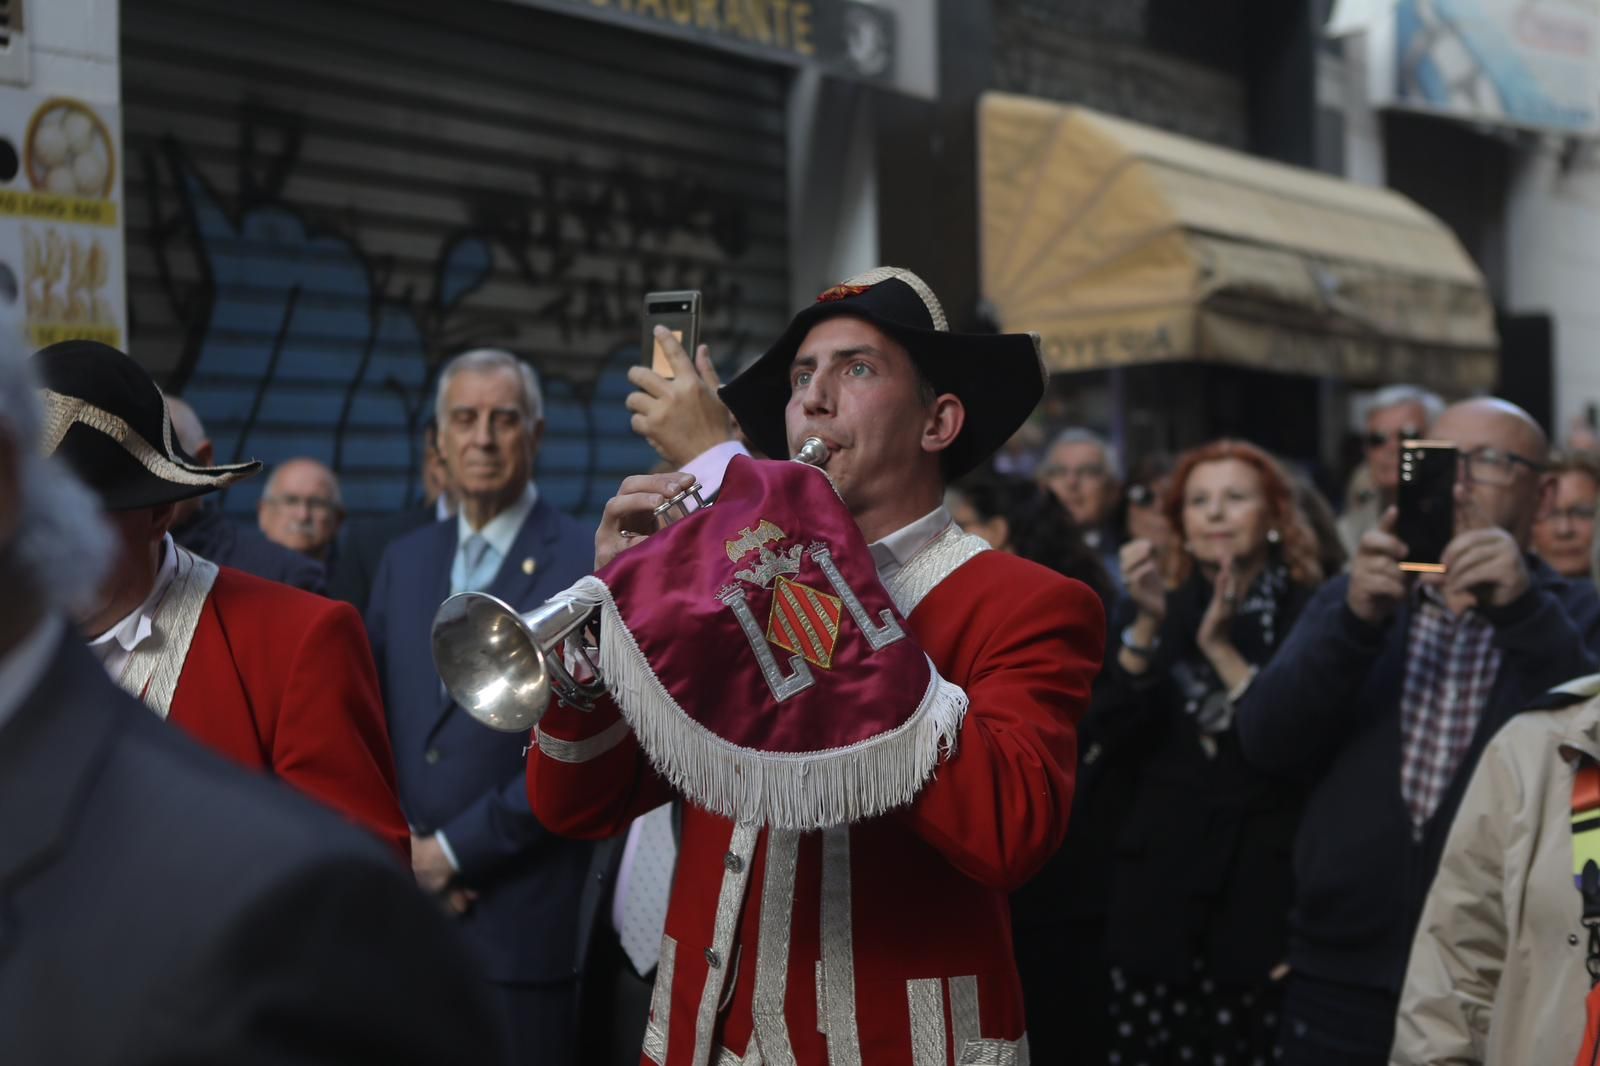 La procesión de Sant Jordi de València, en imágenes